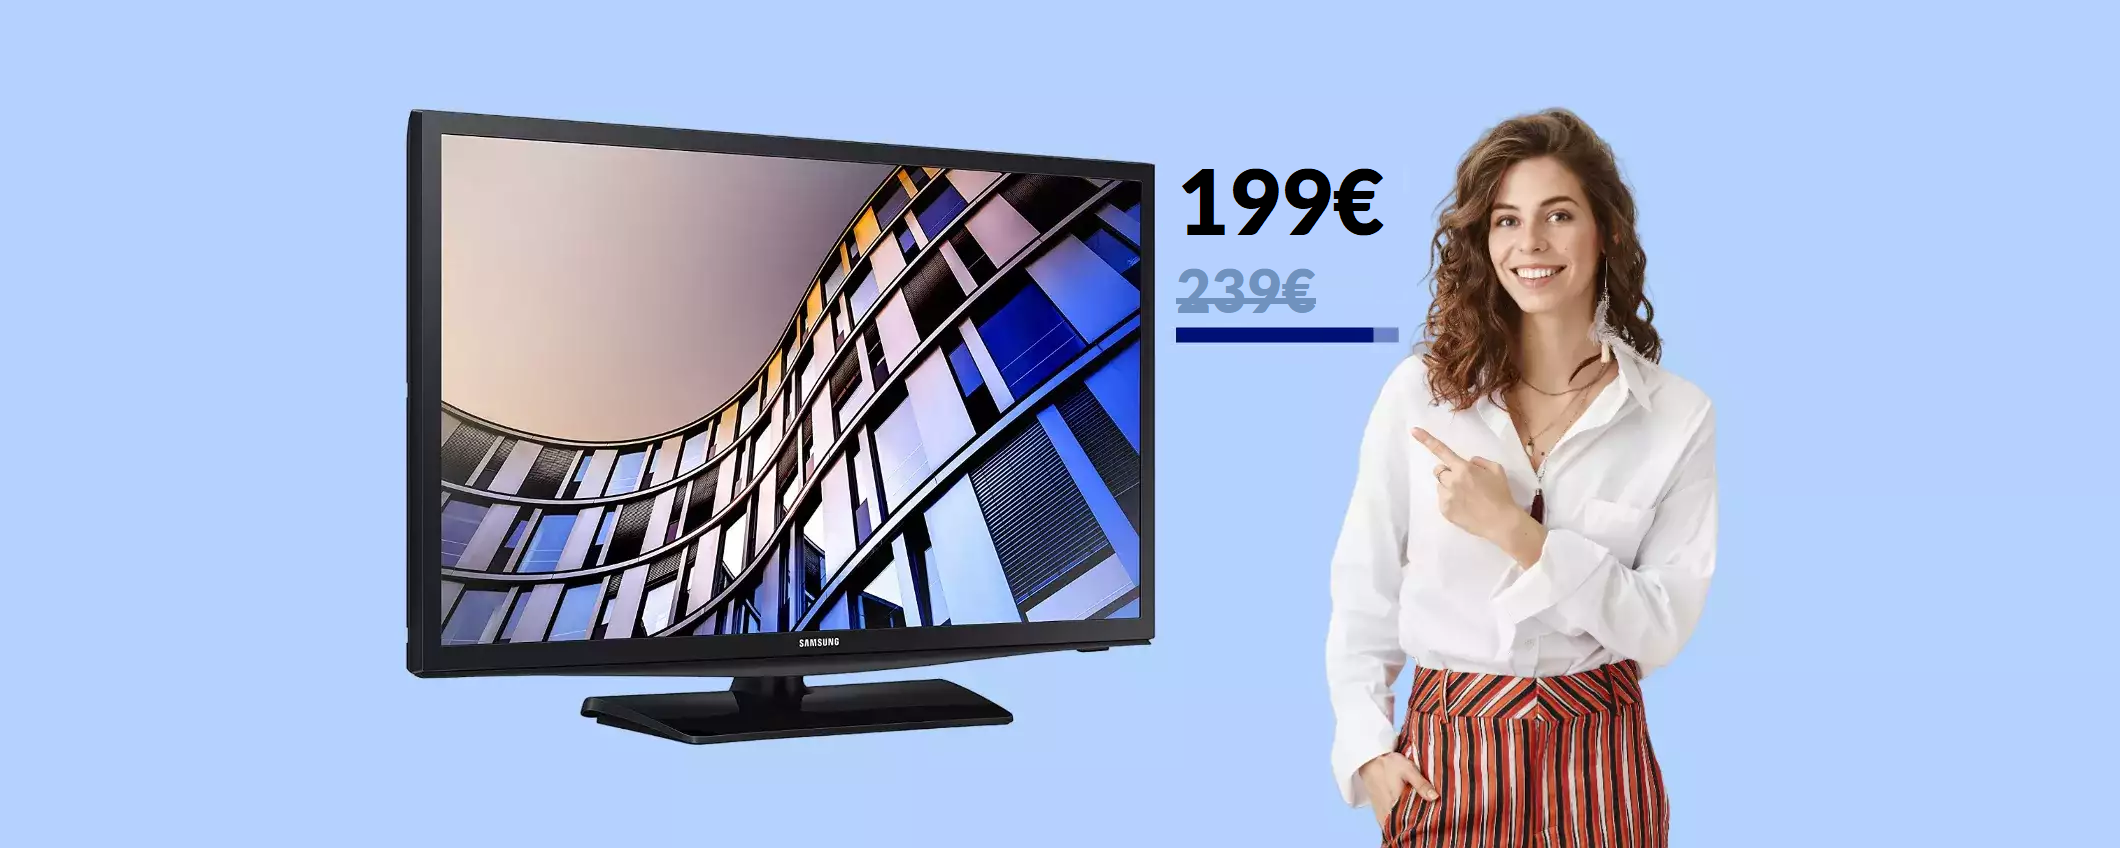 Smart TV Samsung 24'' con ALEXA: oggi bastano 199€ per averla